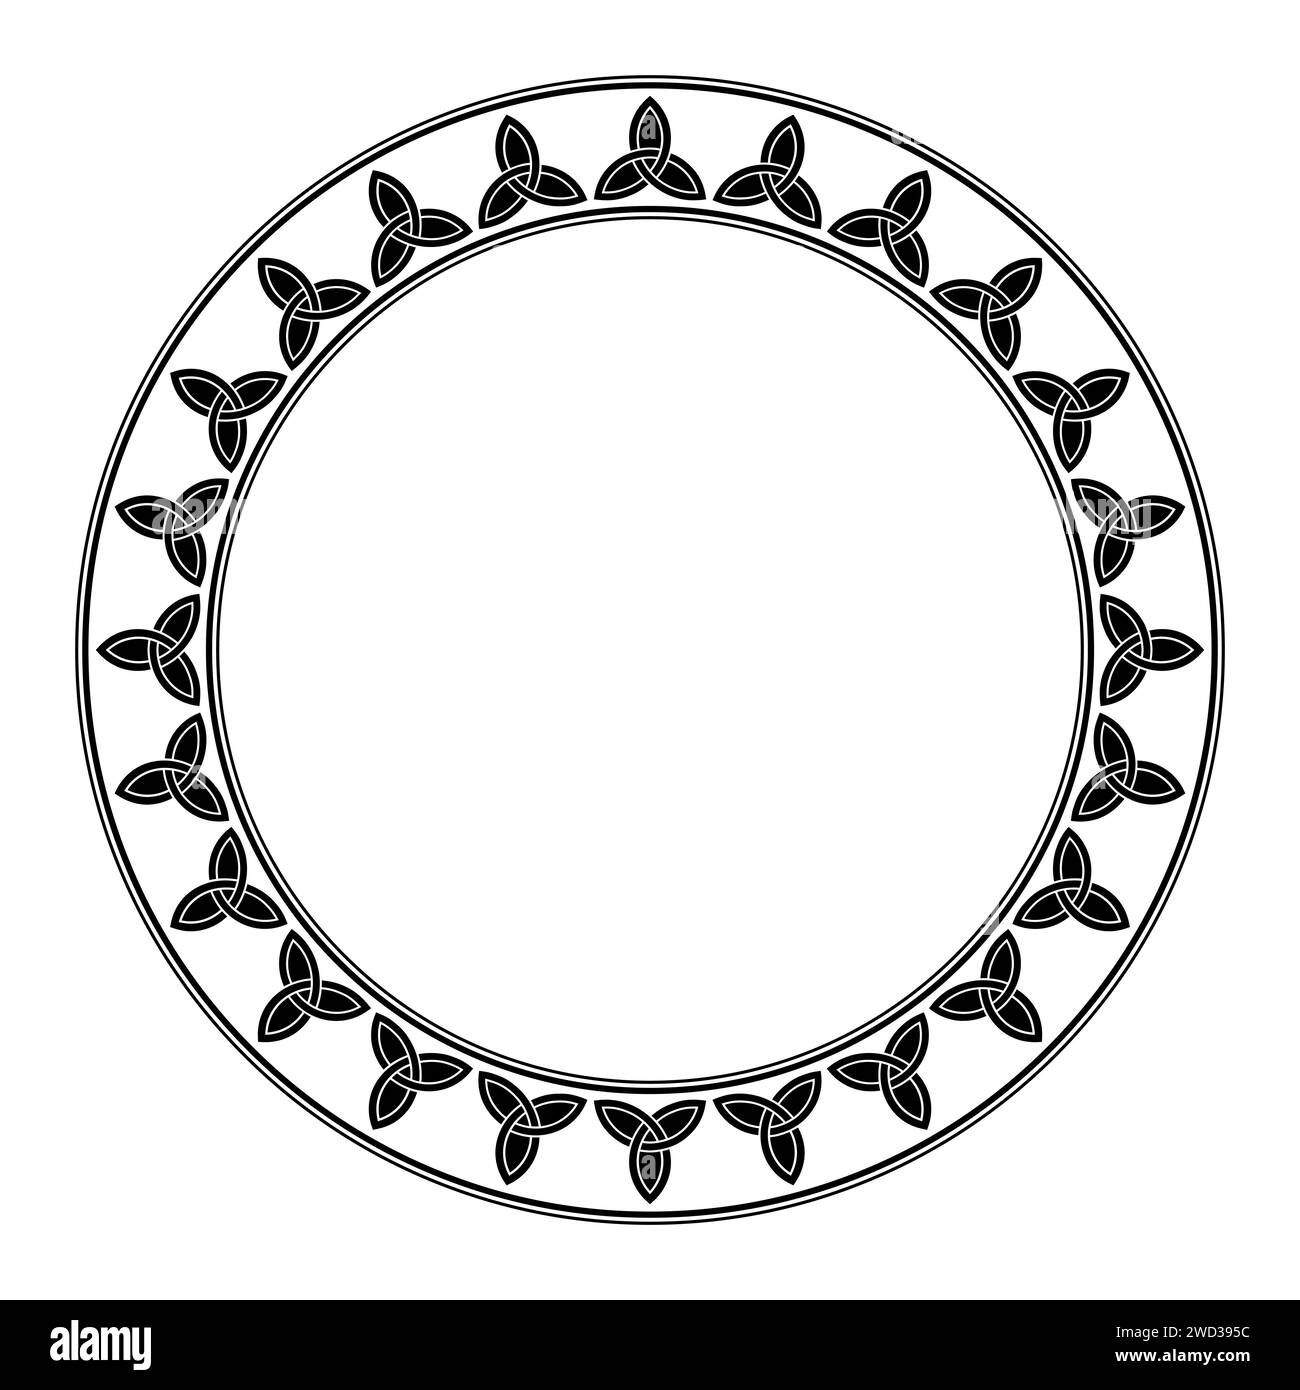 Cornice circolare con motivo in triquetra celtico. Bordo decorativo con l'emblema della Santissima Trinità, formato da archi interlacciati o porzioni di cerchi. Foto Stock